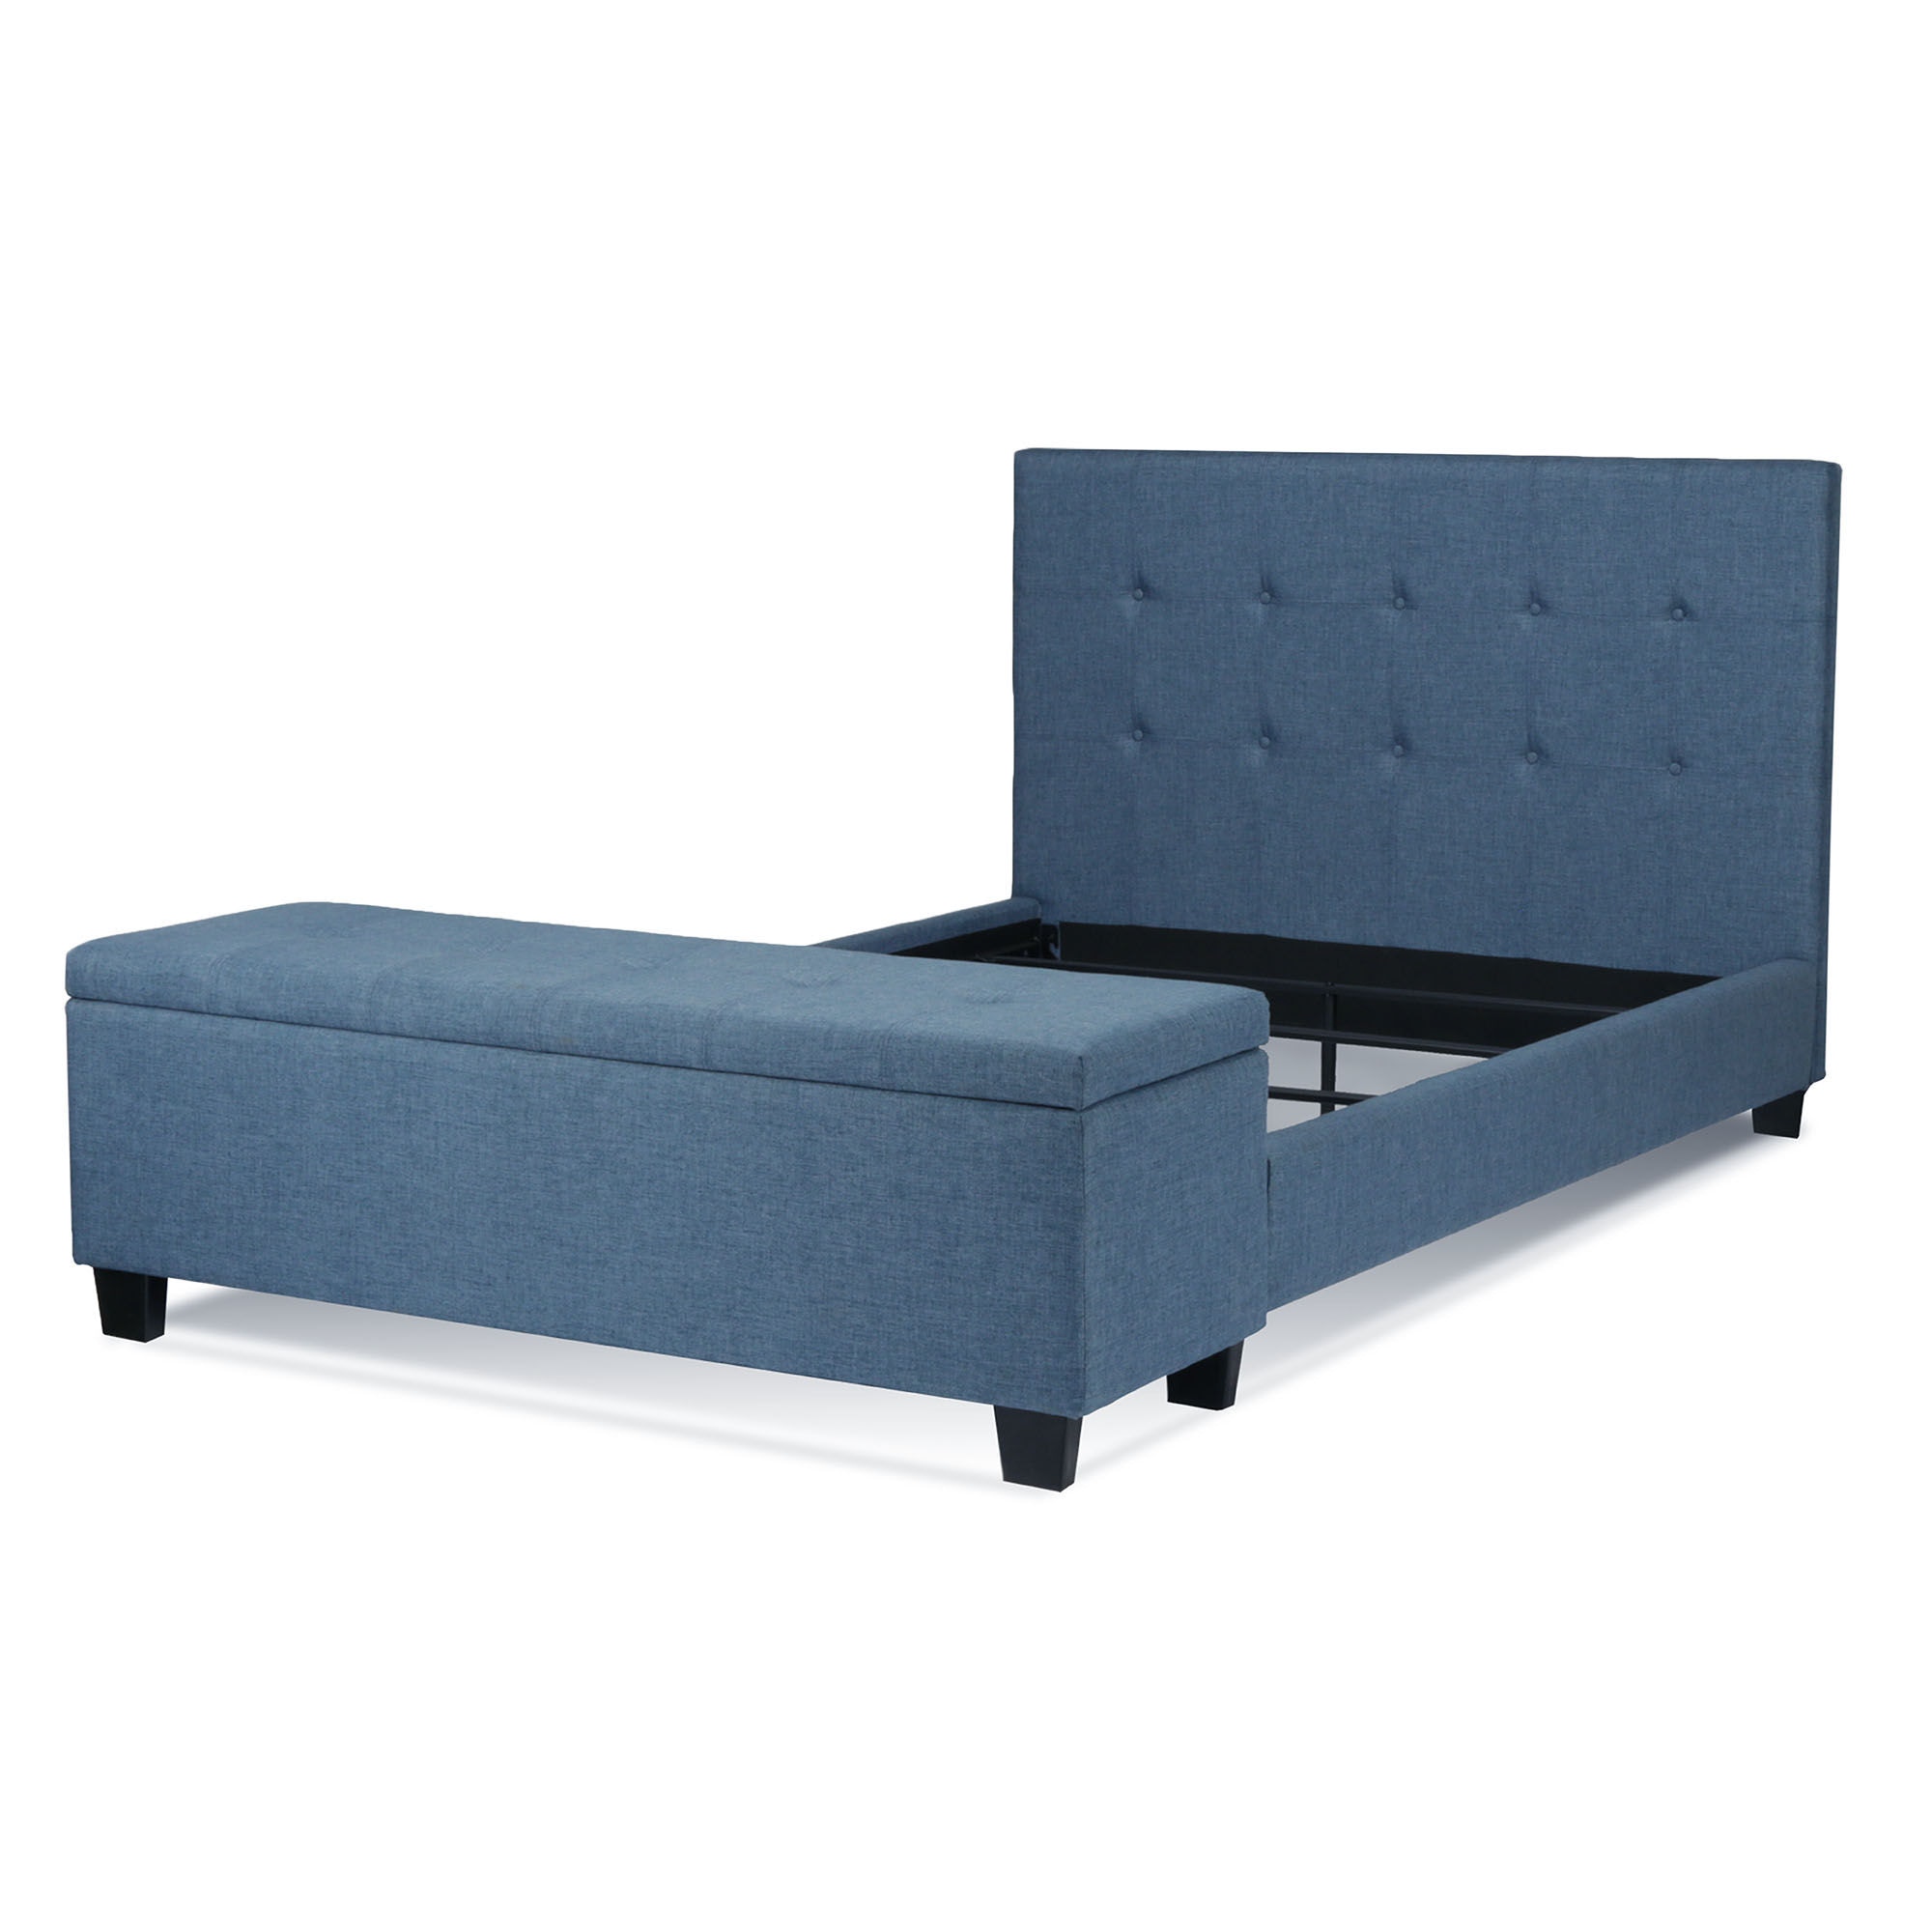 East West Furniture FNF-11-F Platform Full Bed Frame - Denim Blue Line –  East West Furniture Main Site